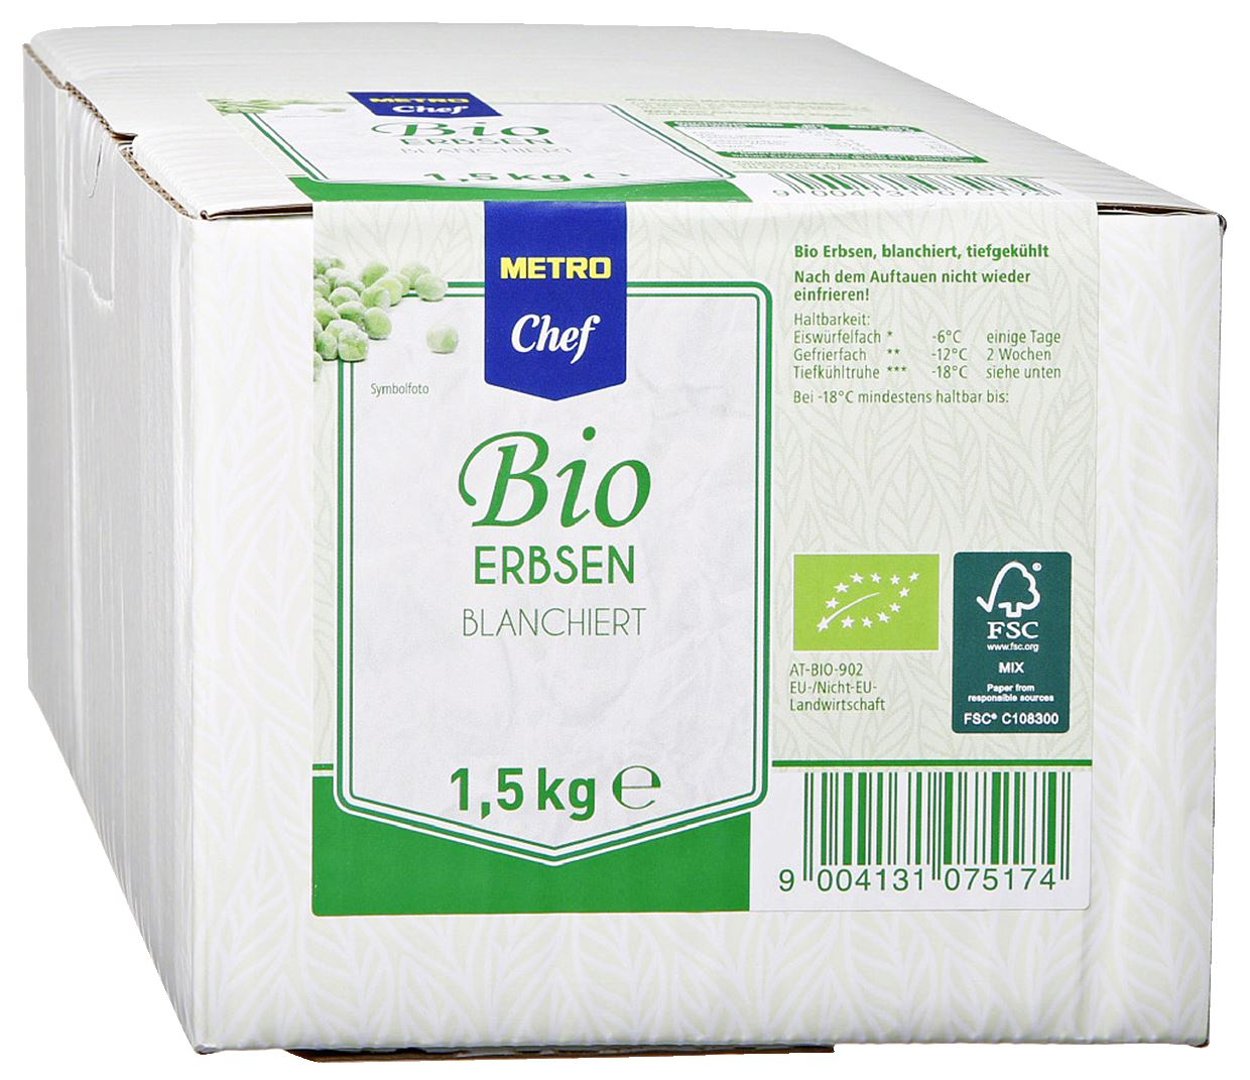 METRO Chef Bio - Erbsen tiefgefroren - 1,5 kg Packung